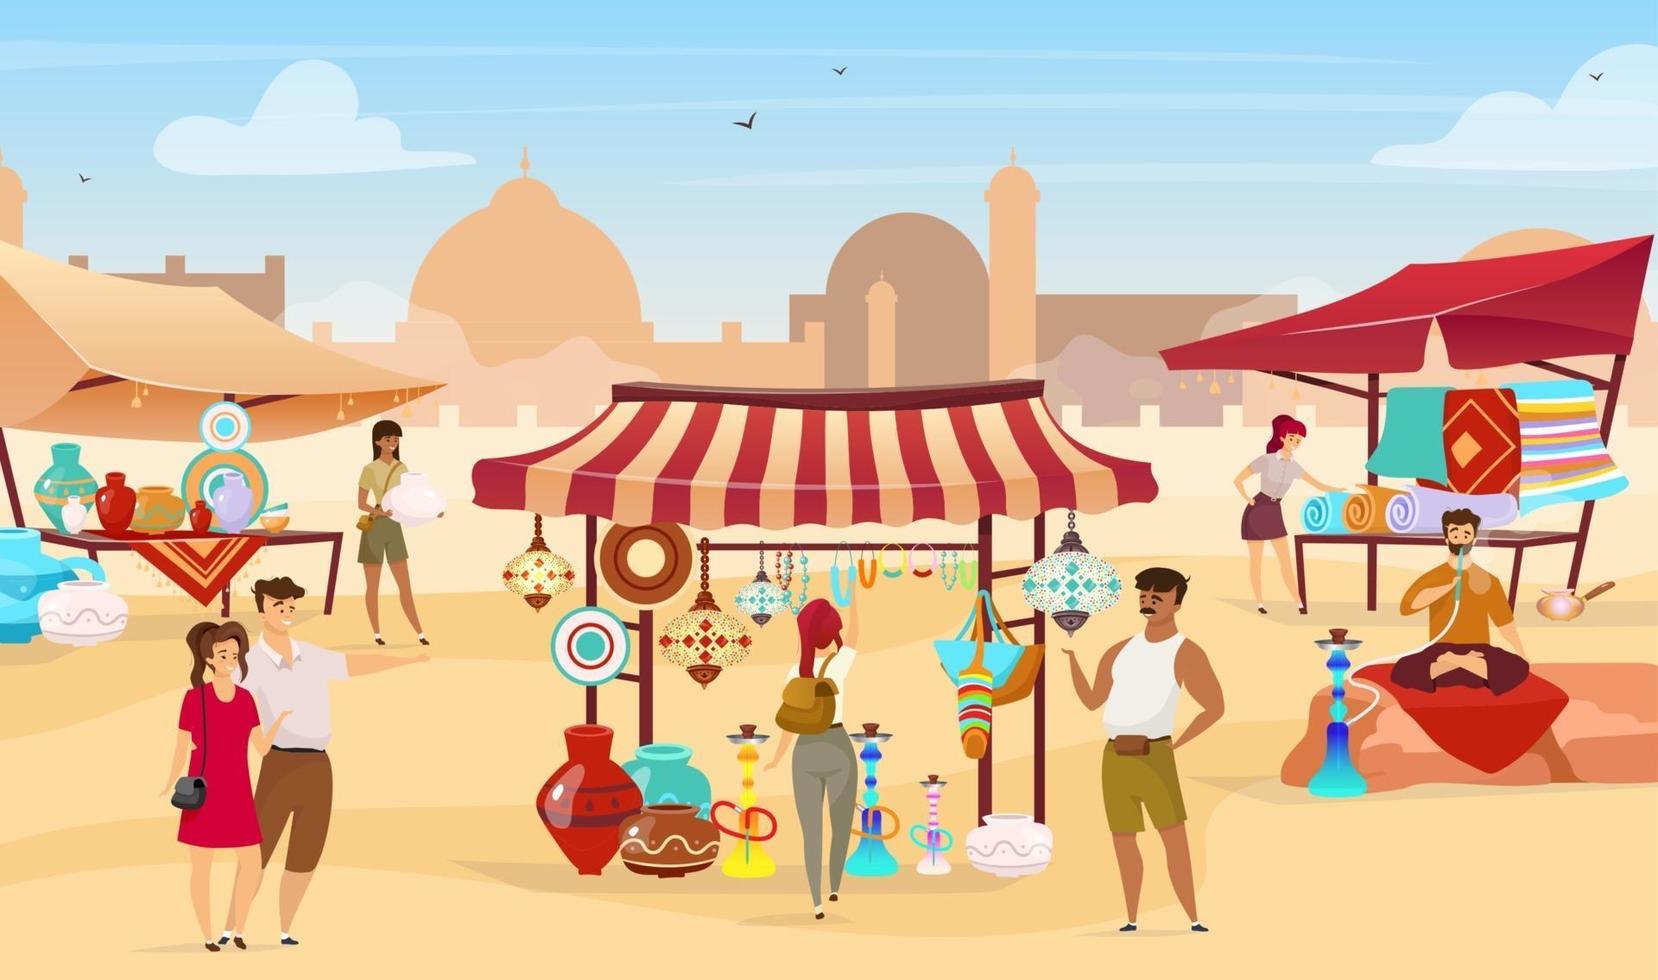 illustration vectorielle plane du bazar égyptien. vendeurs musulmans au marché oriental. touristes choisissant des souvenirs, des céramiques faites à la main et des tapis personnages de dessins animés sans visage avec une ville désertique en arrière-plan vecteur